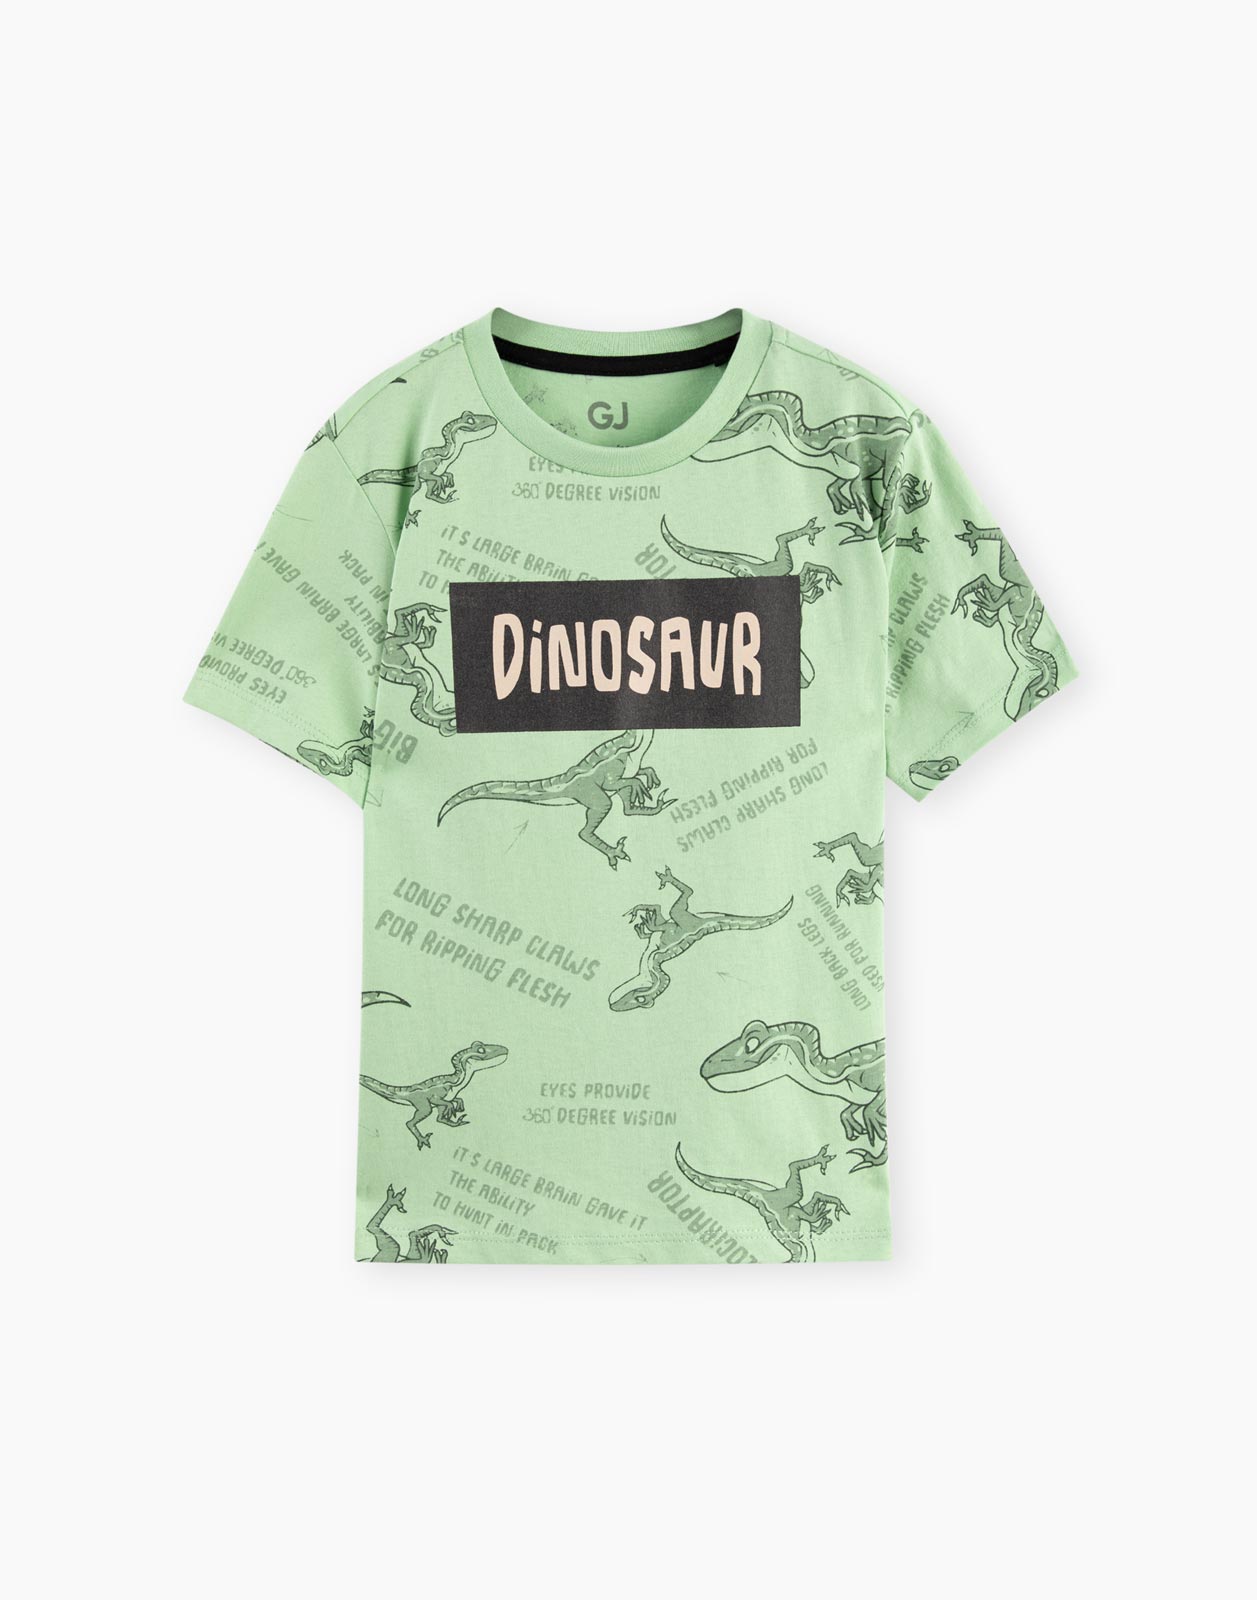 Оливковая футболка с принтом динозавров для мальчика 12-18мес/86